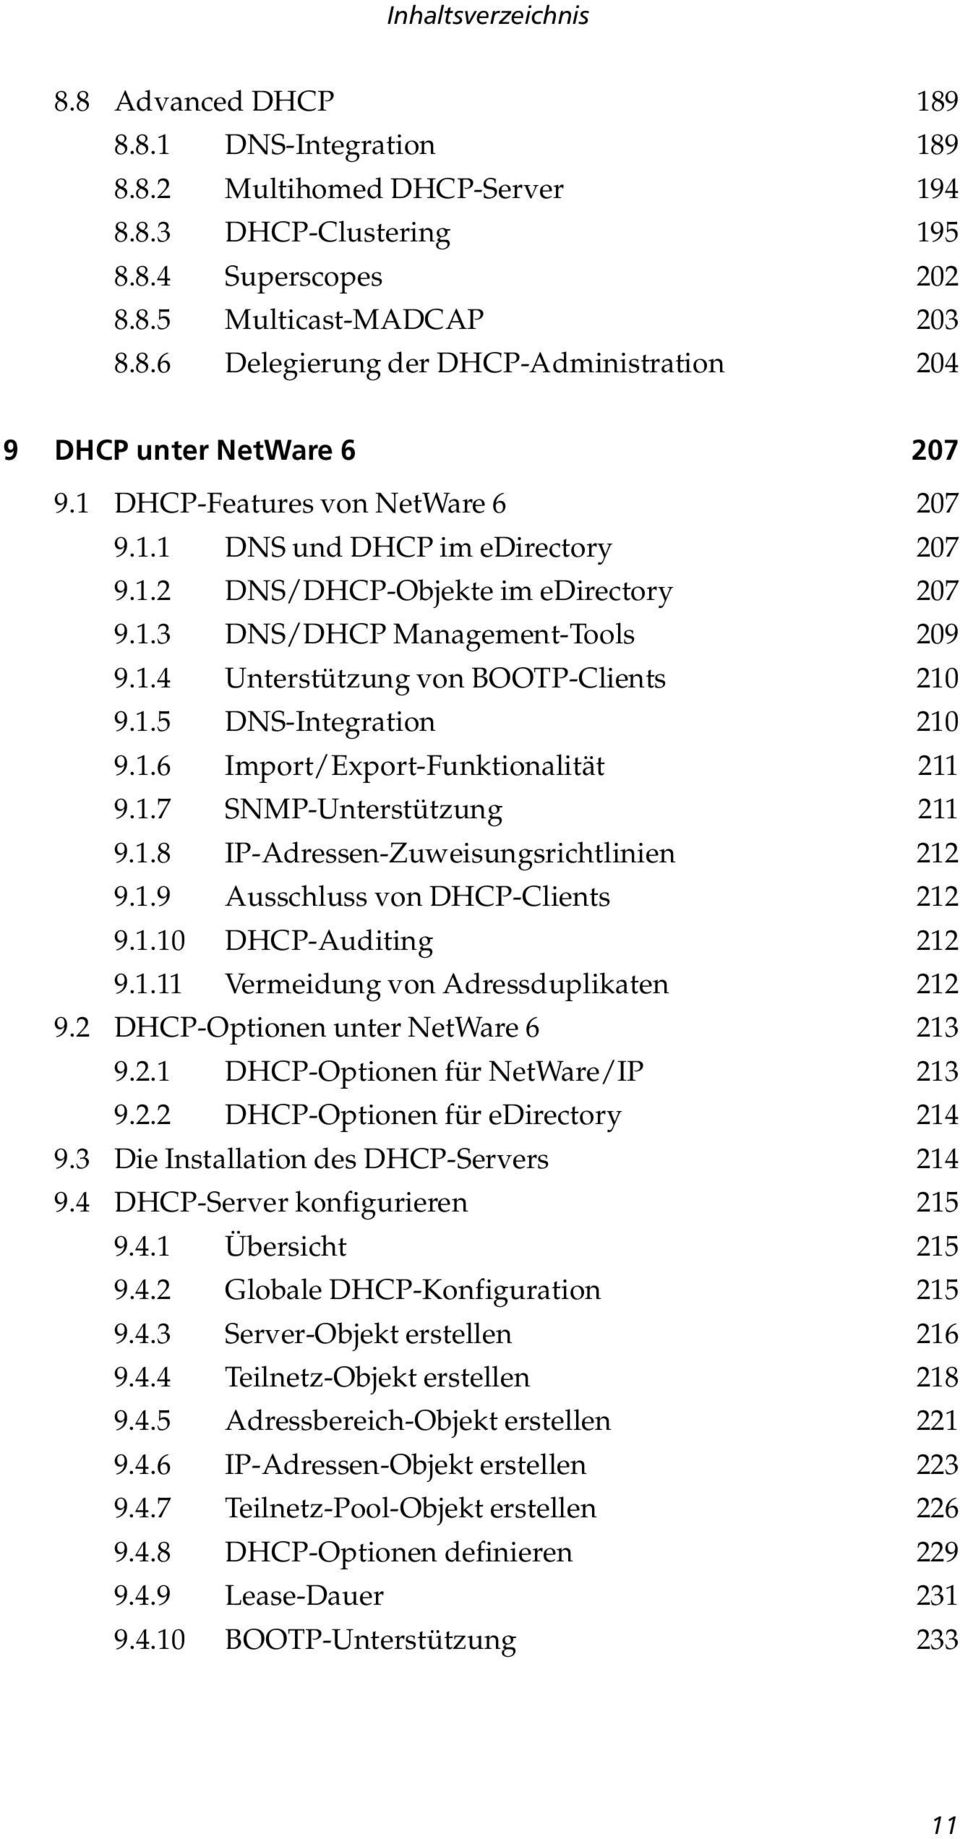 1.6 Import/Export-Funktionalität 211 9.1.7 SNMP-Unterstützung 211 9.1.8 IP-Adressen-Zuweisungsrichtlinien 212 9.1.9 Ausschluss von DHCP-Clients 212 9.1.10 DHCP-Auditing 212 9.1.11 Vermeidung von Adressduplikaten 212 9.